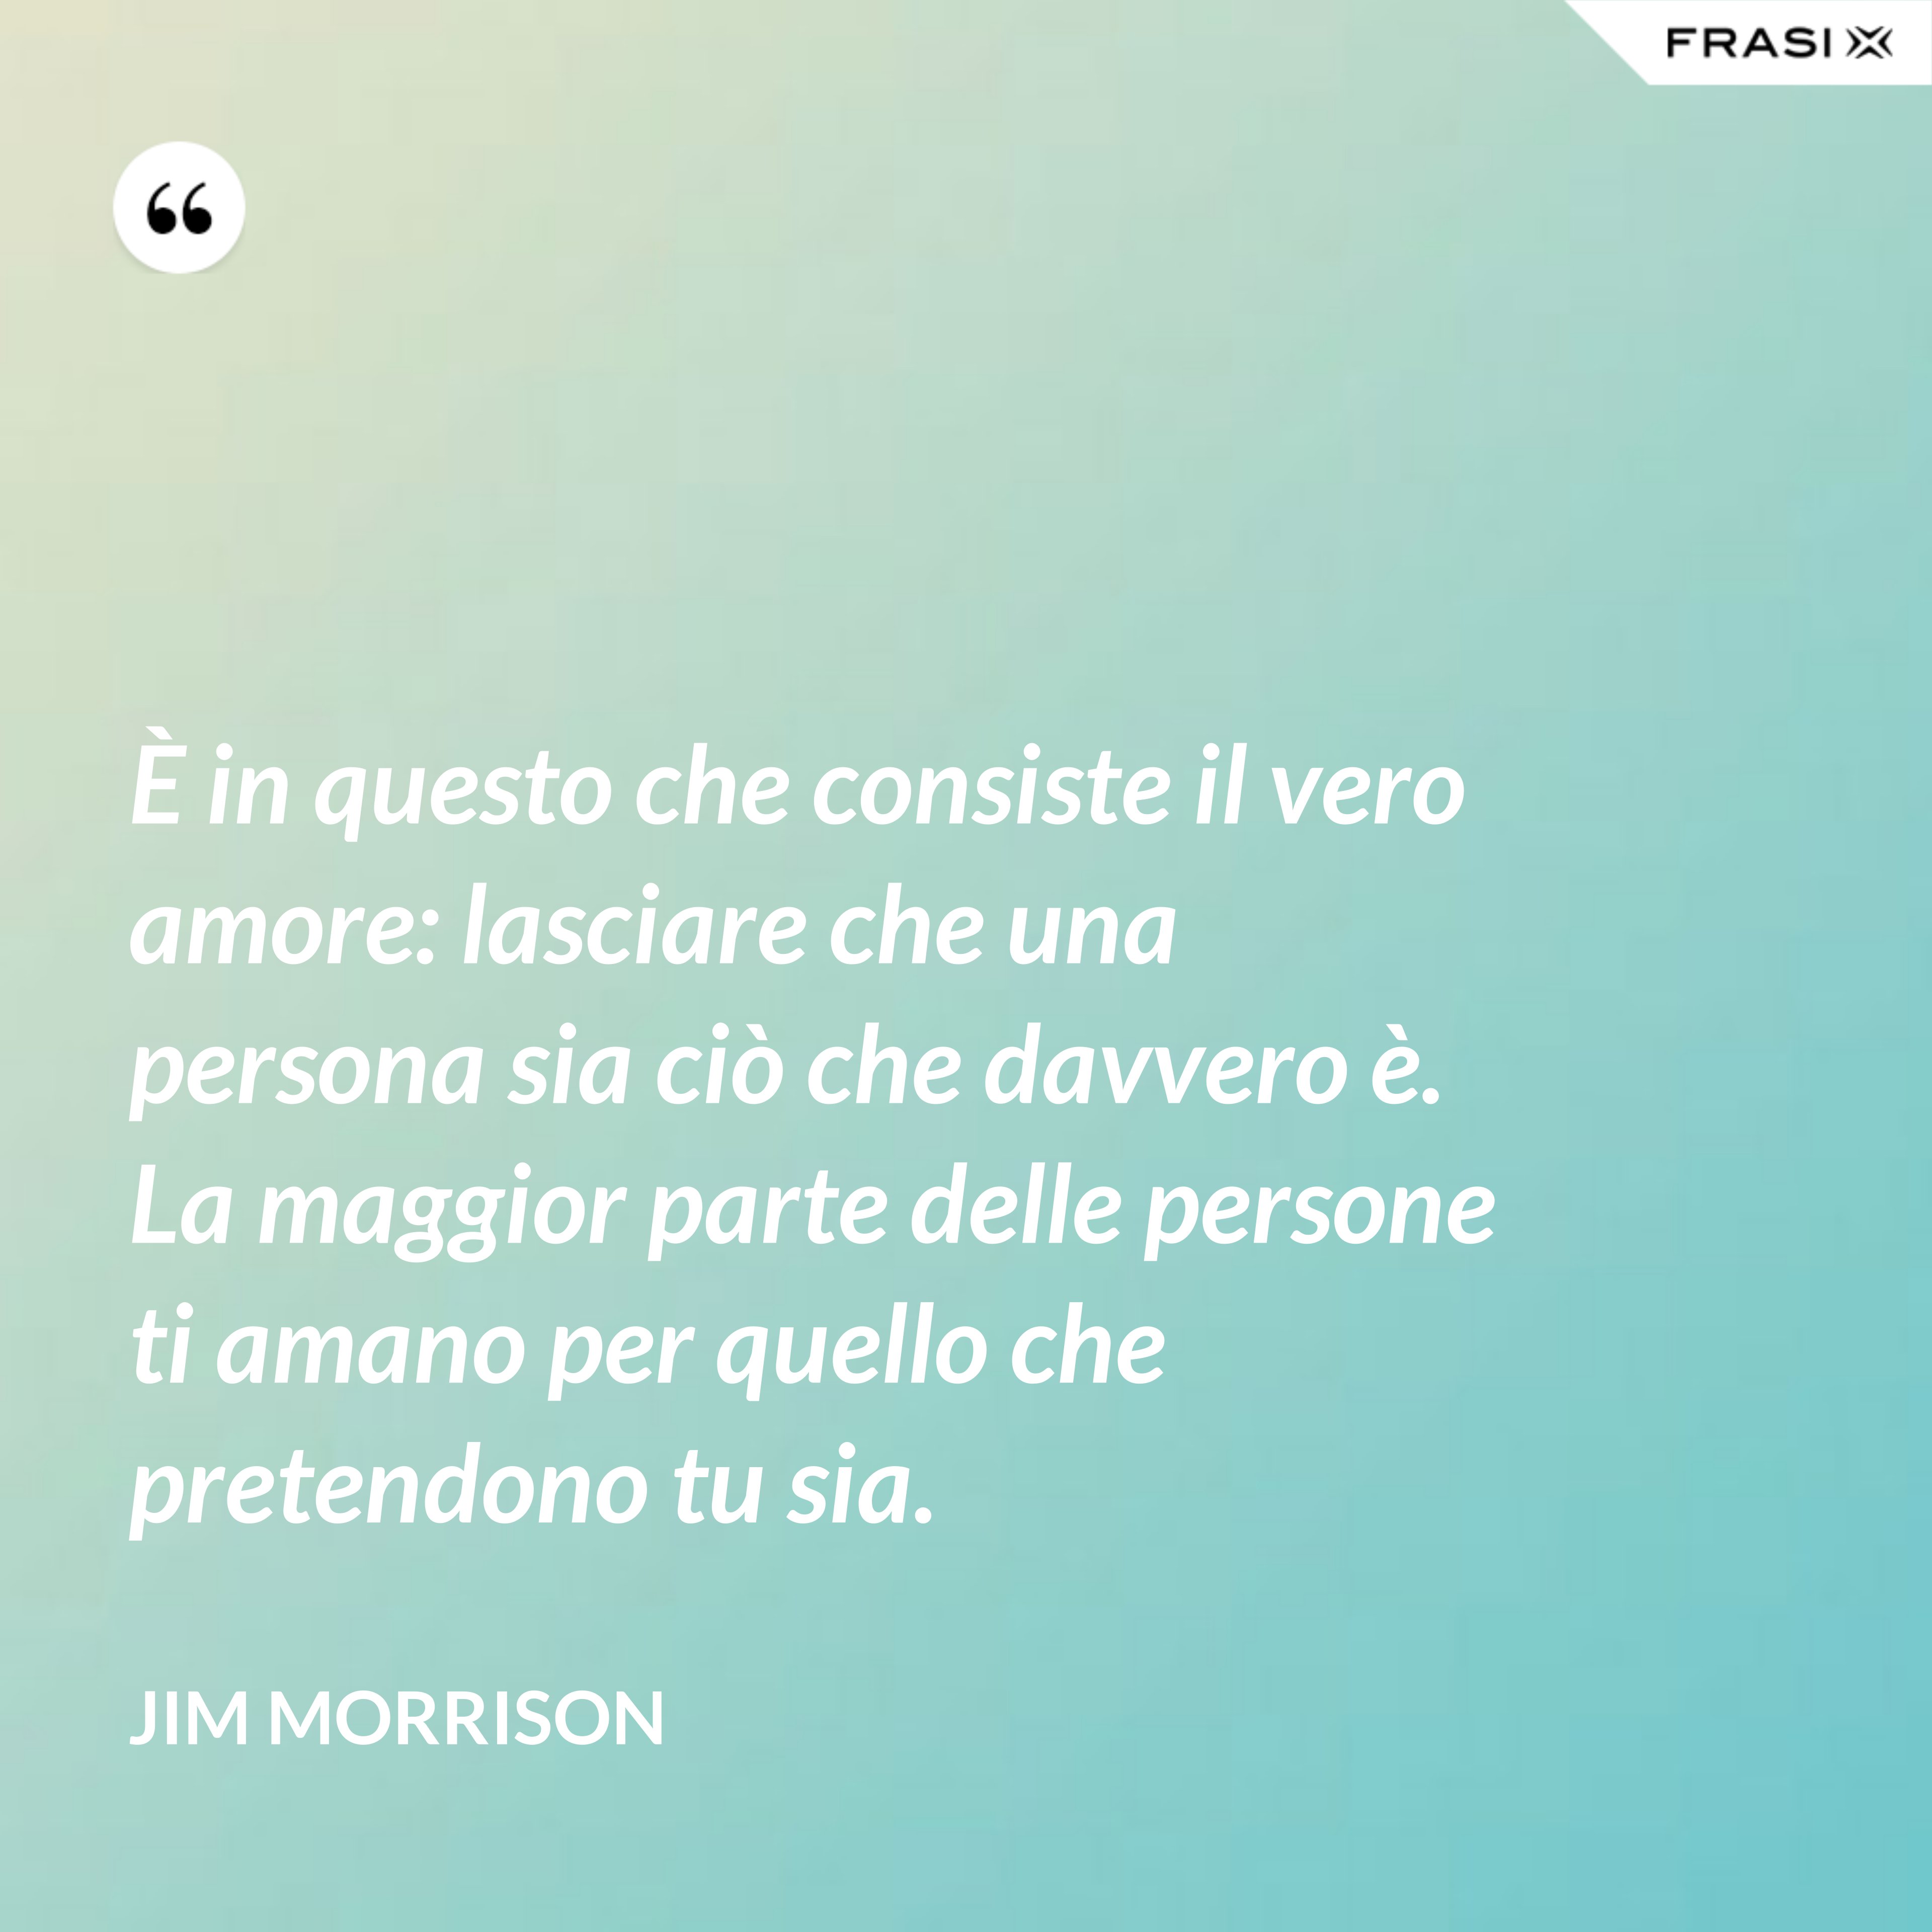 È in questo che consiste il vero amore: lasciare che una persona sia ciò che davvero è. La maggior parte delle persone ti amano per quello che pretendono tu sia. - Jim Morrison